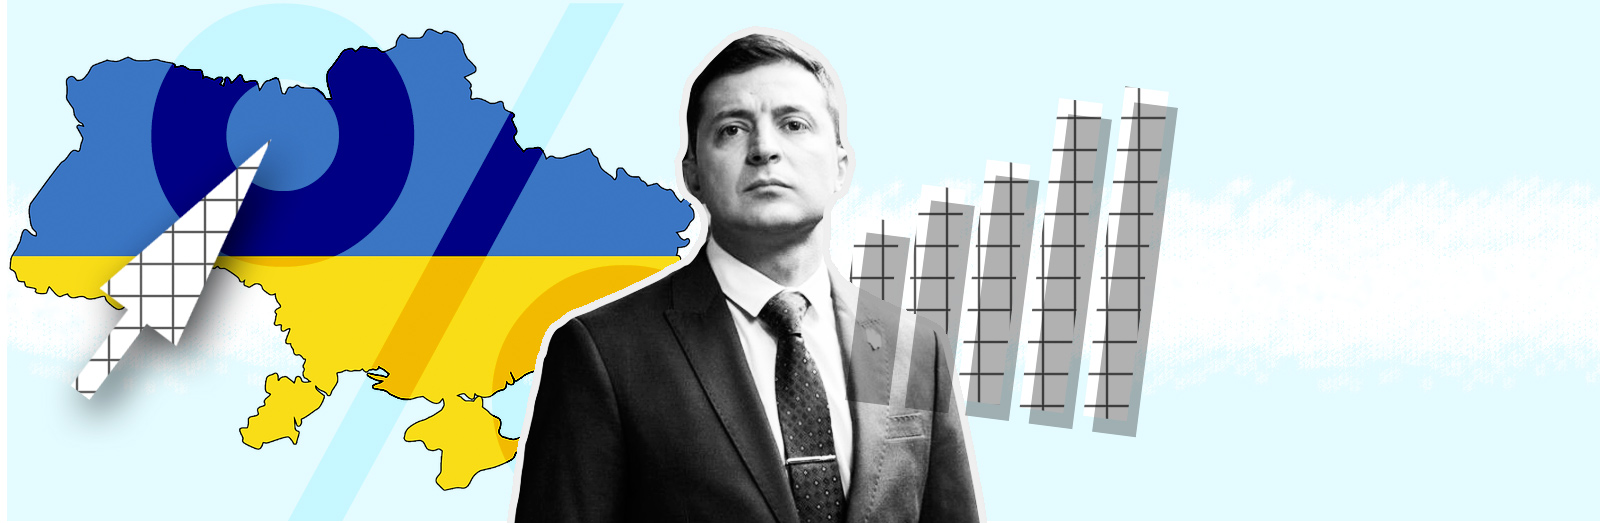 Отношение украинцев к реформам: куда делась зрада?